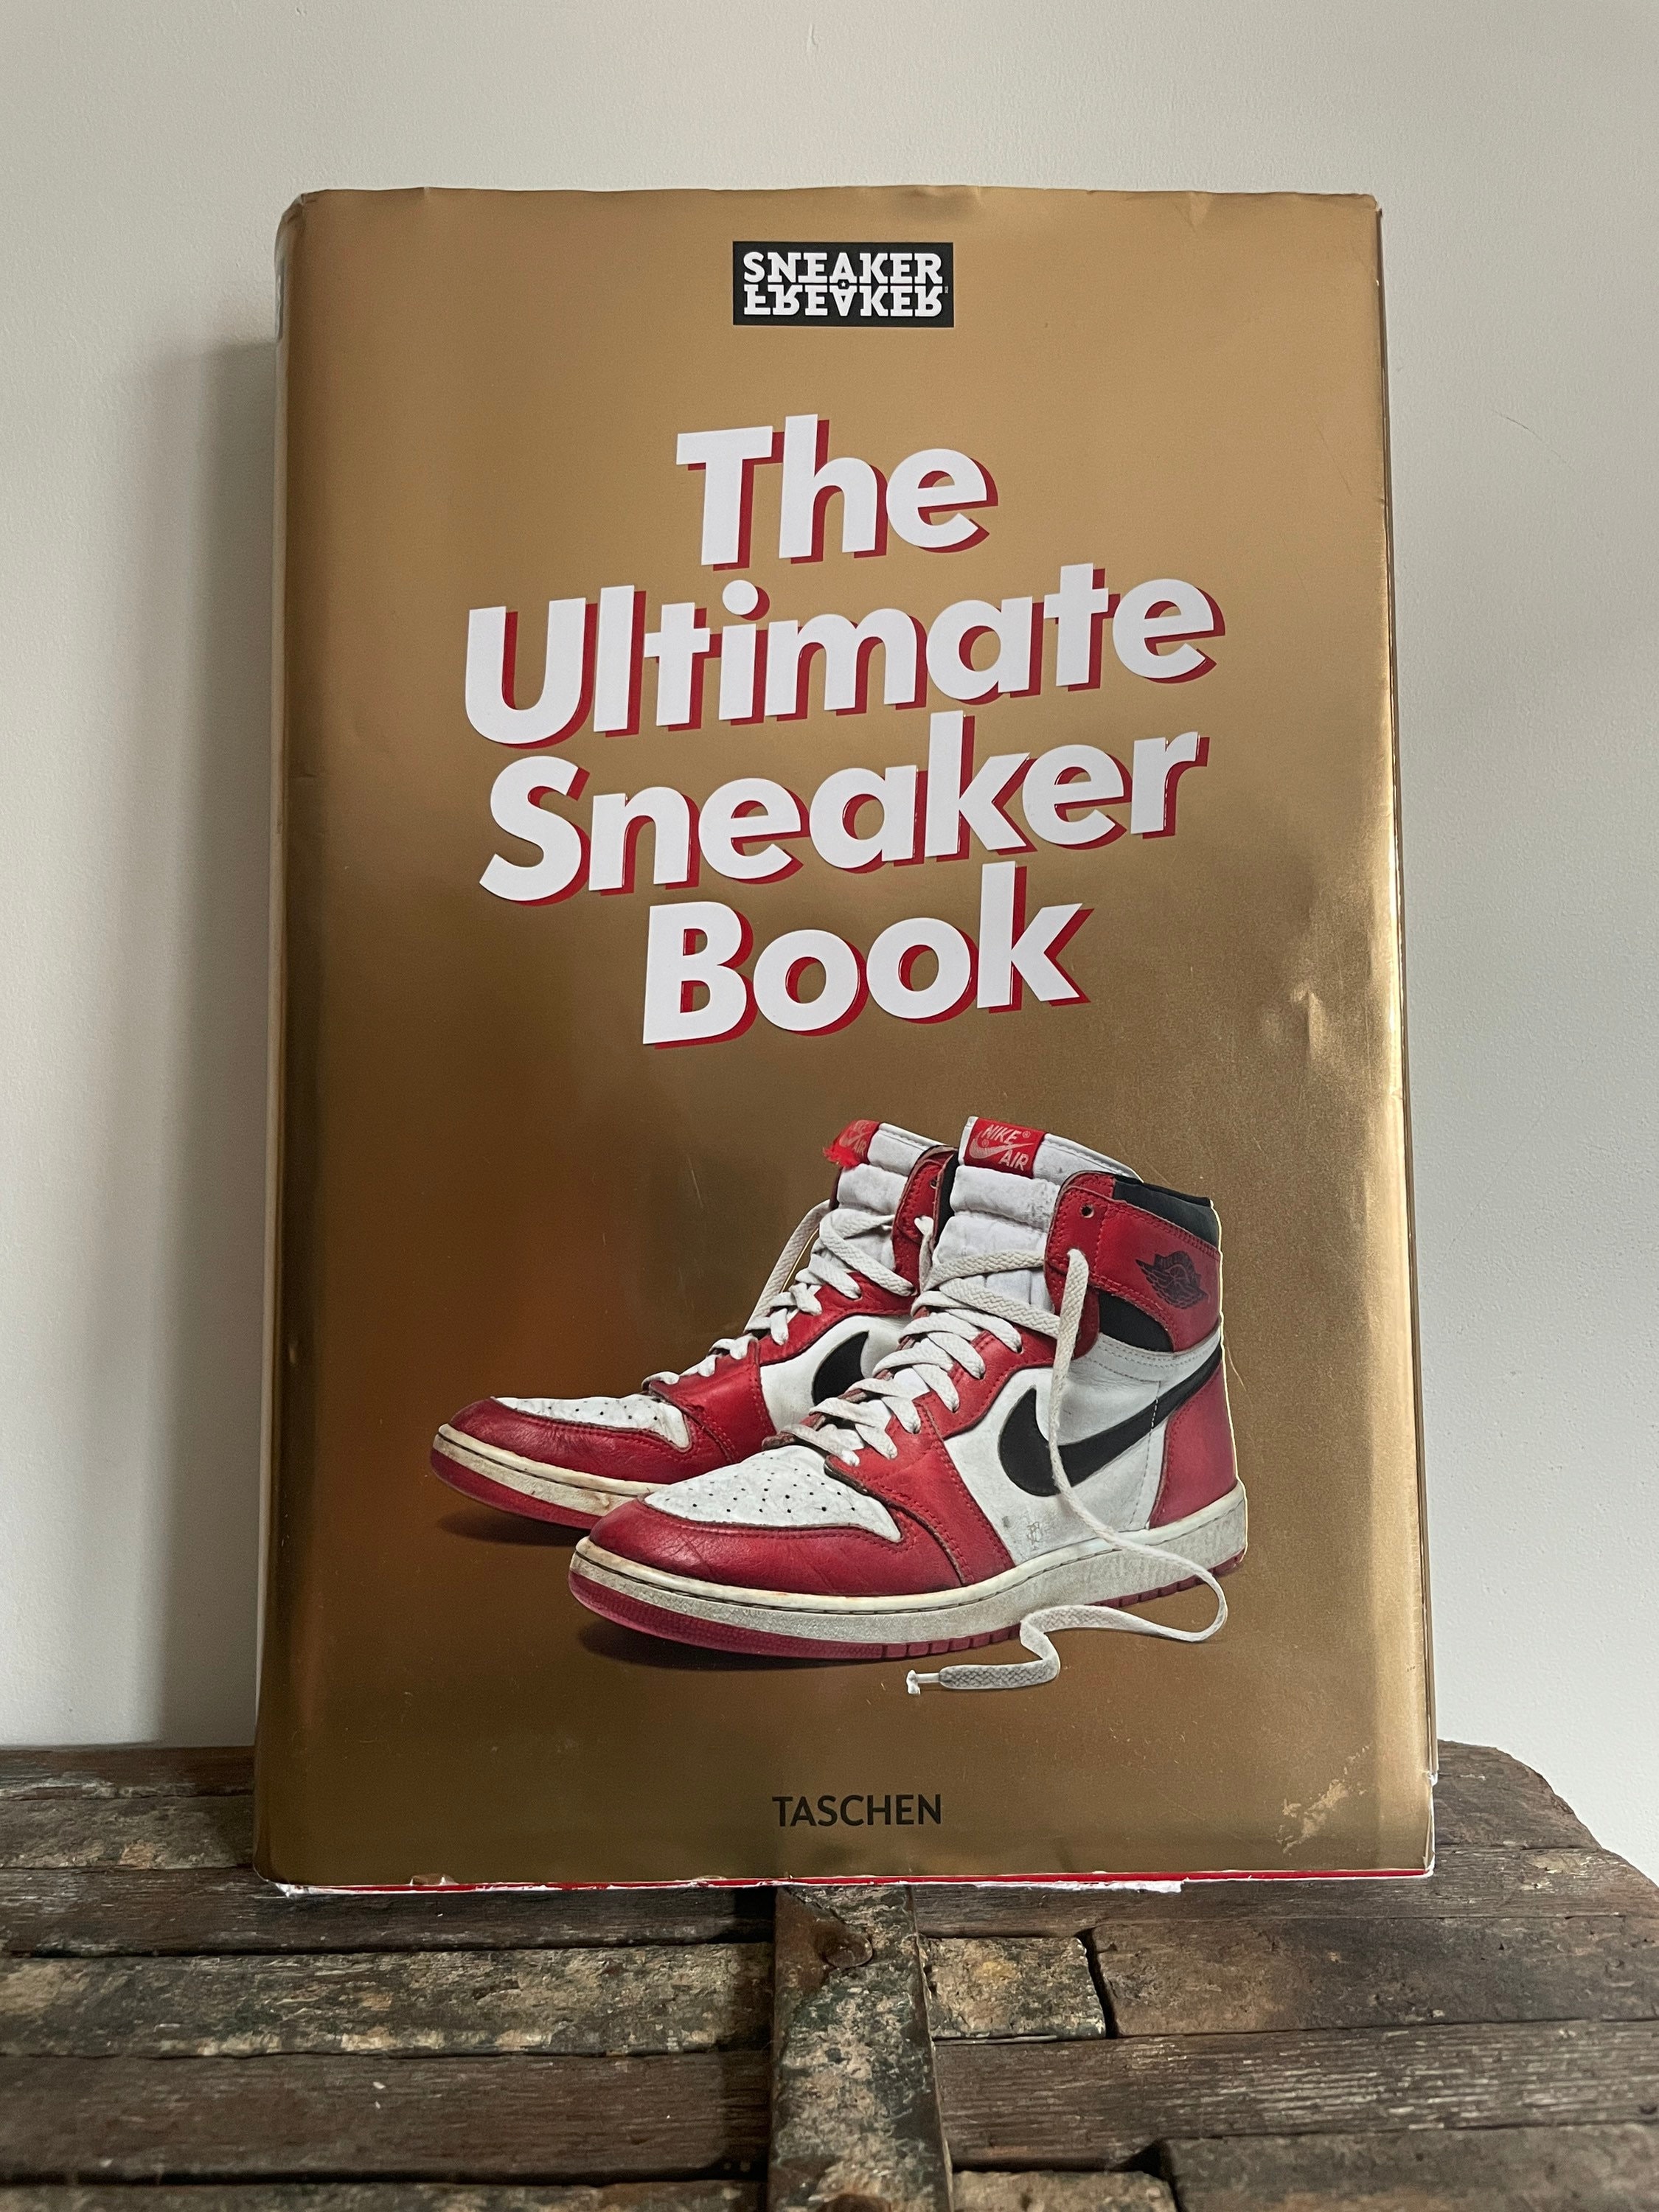 Sneaker Freaker the Ultimate Sneaker Book by Taschen. 600 - Etsy